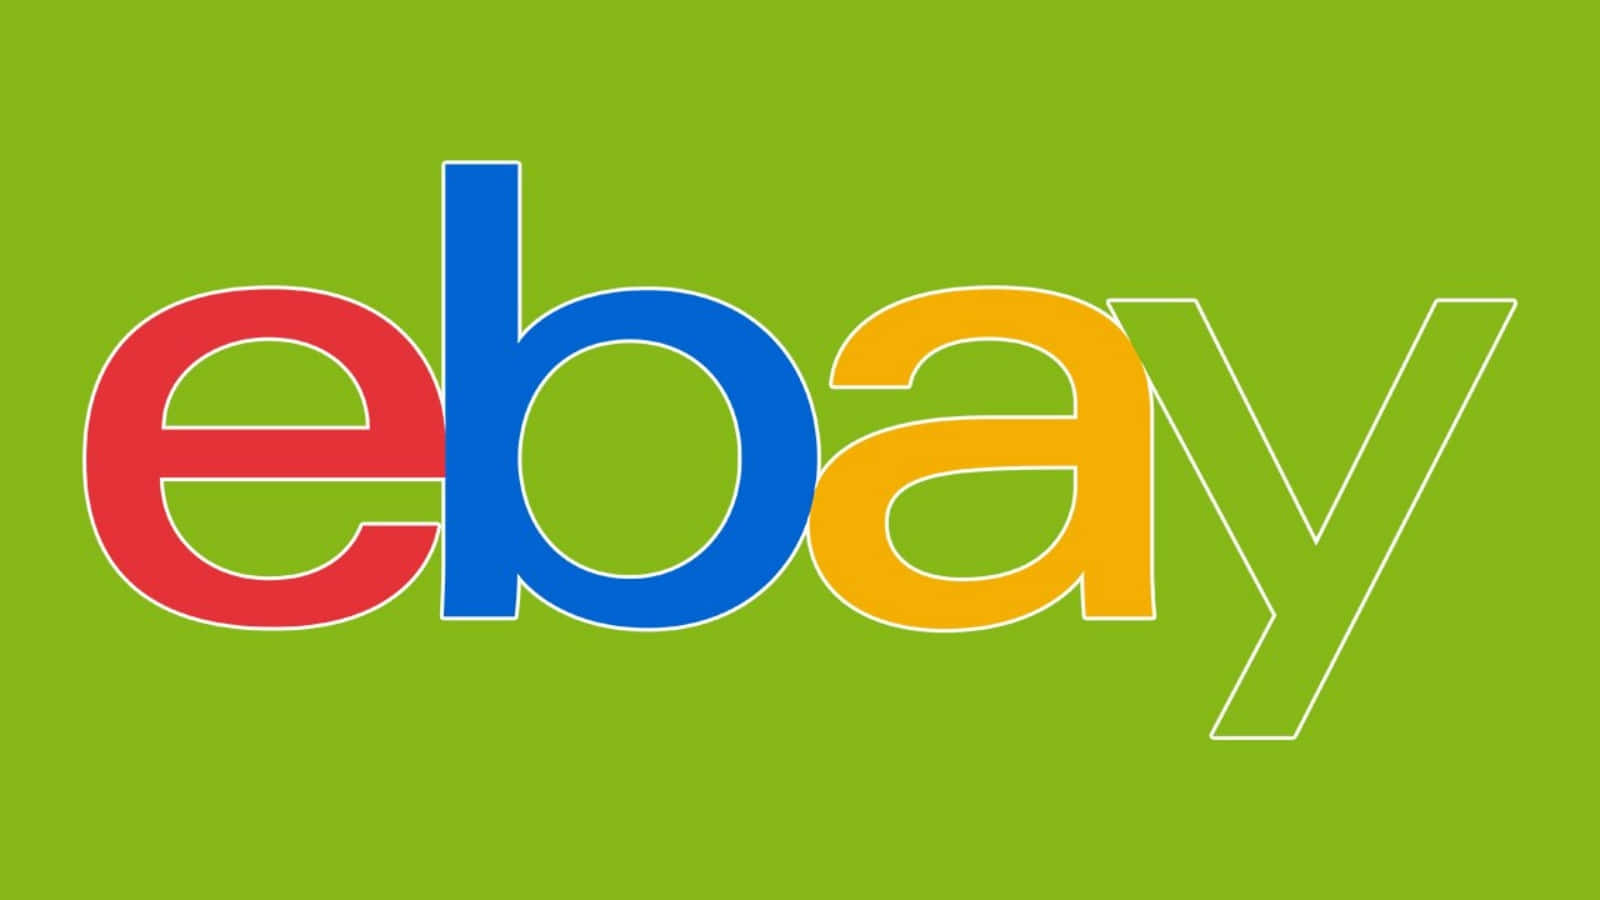 Ofuturo Das Compras Está Aqui: Compre No Ebay